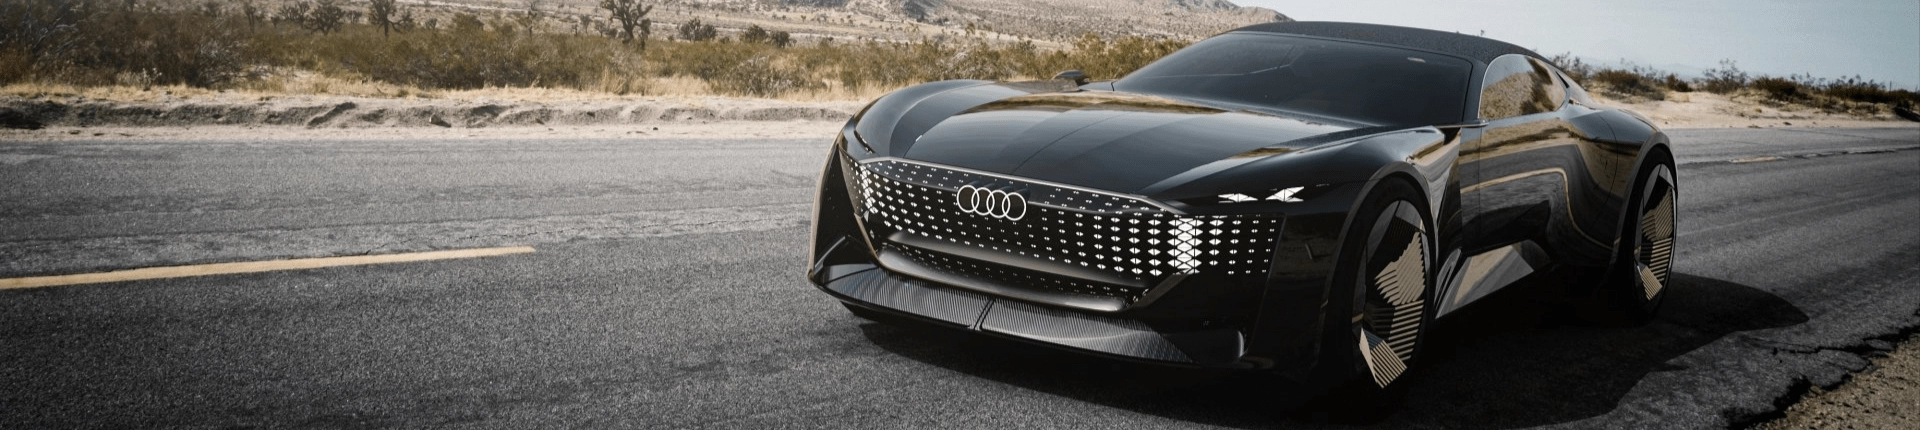 Audi Skysphere İle Geleceğe Bir Bakış Atın!